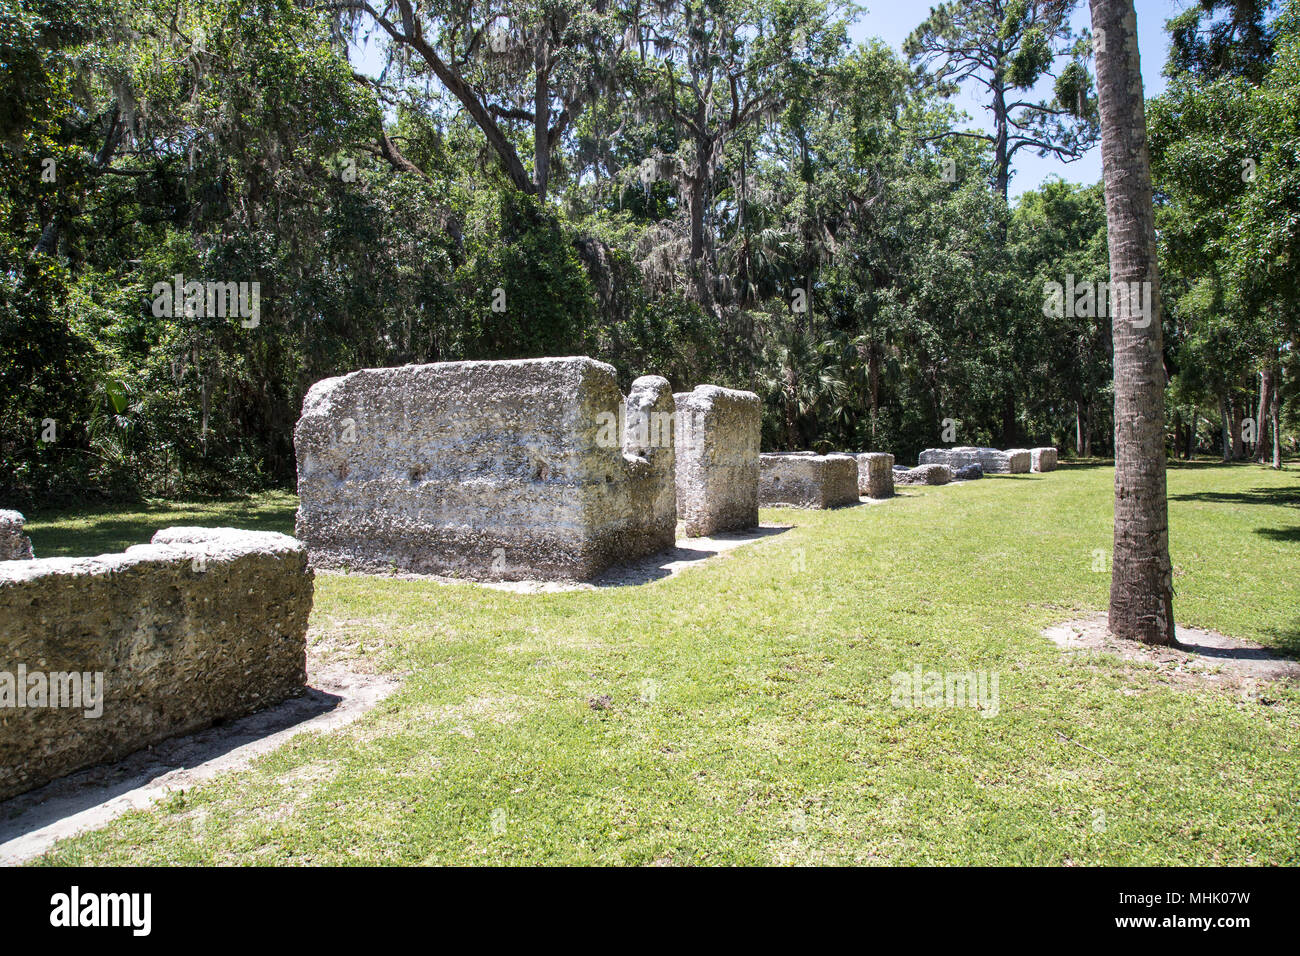 Cabine slave al Kingsley Plantation a Timucuan preservare Jacksonville, Florida. Essi sono stati costruiti in un guscio di ostrica calcestruzzo chiamato tabby Foto Stock